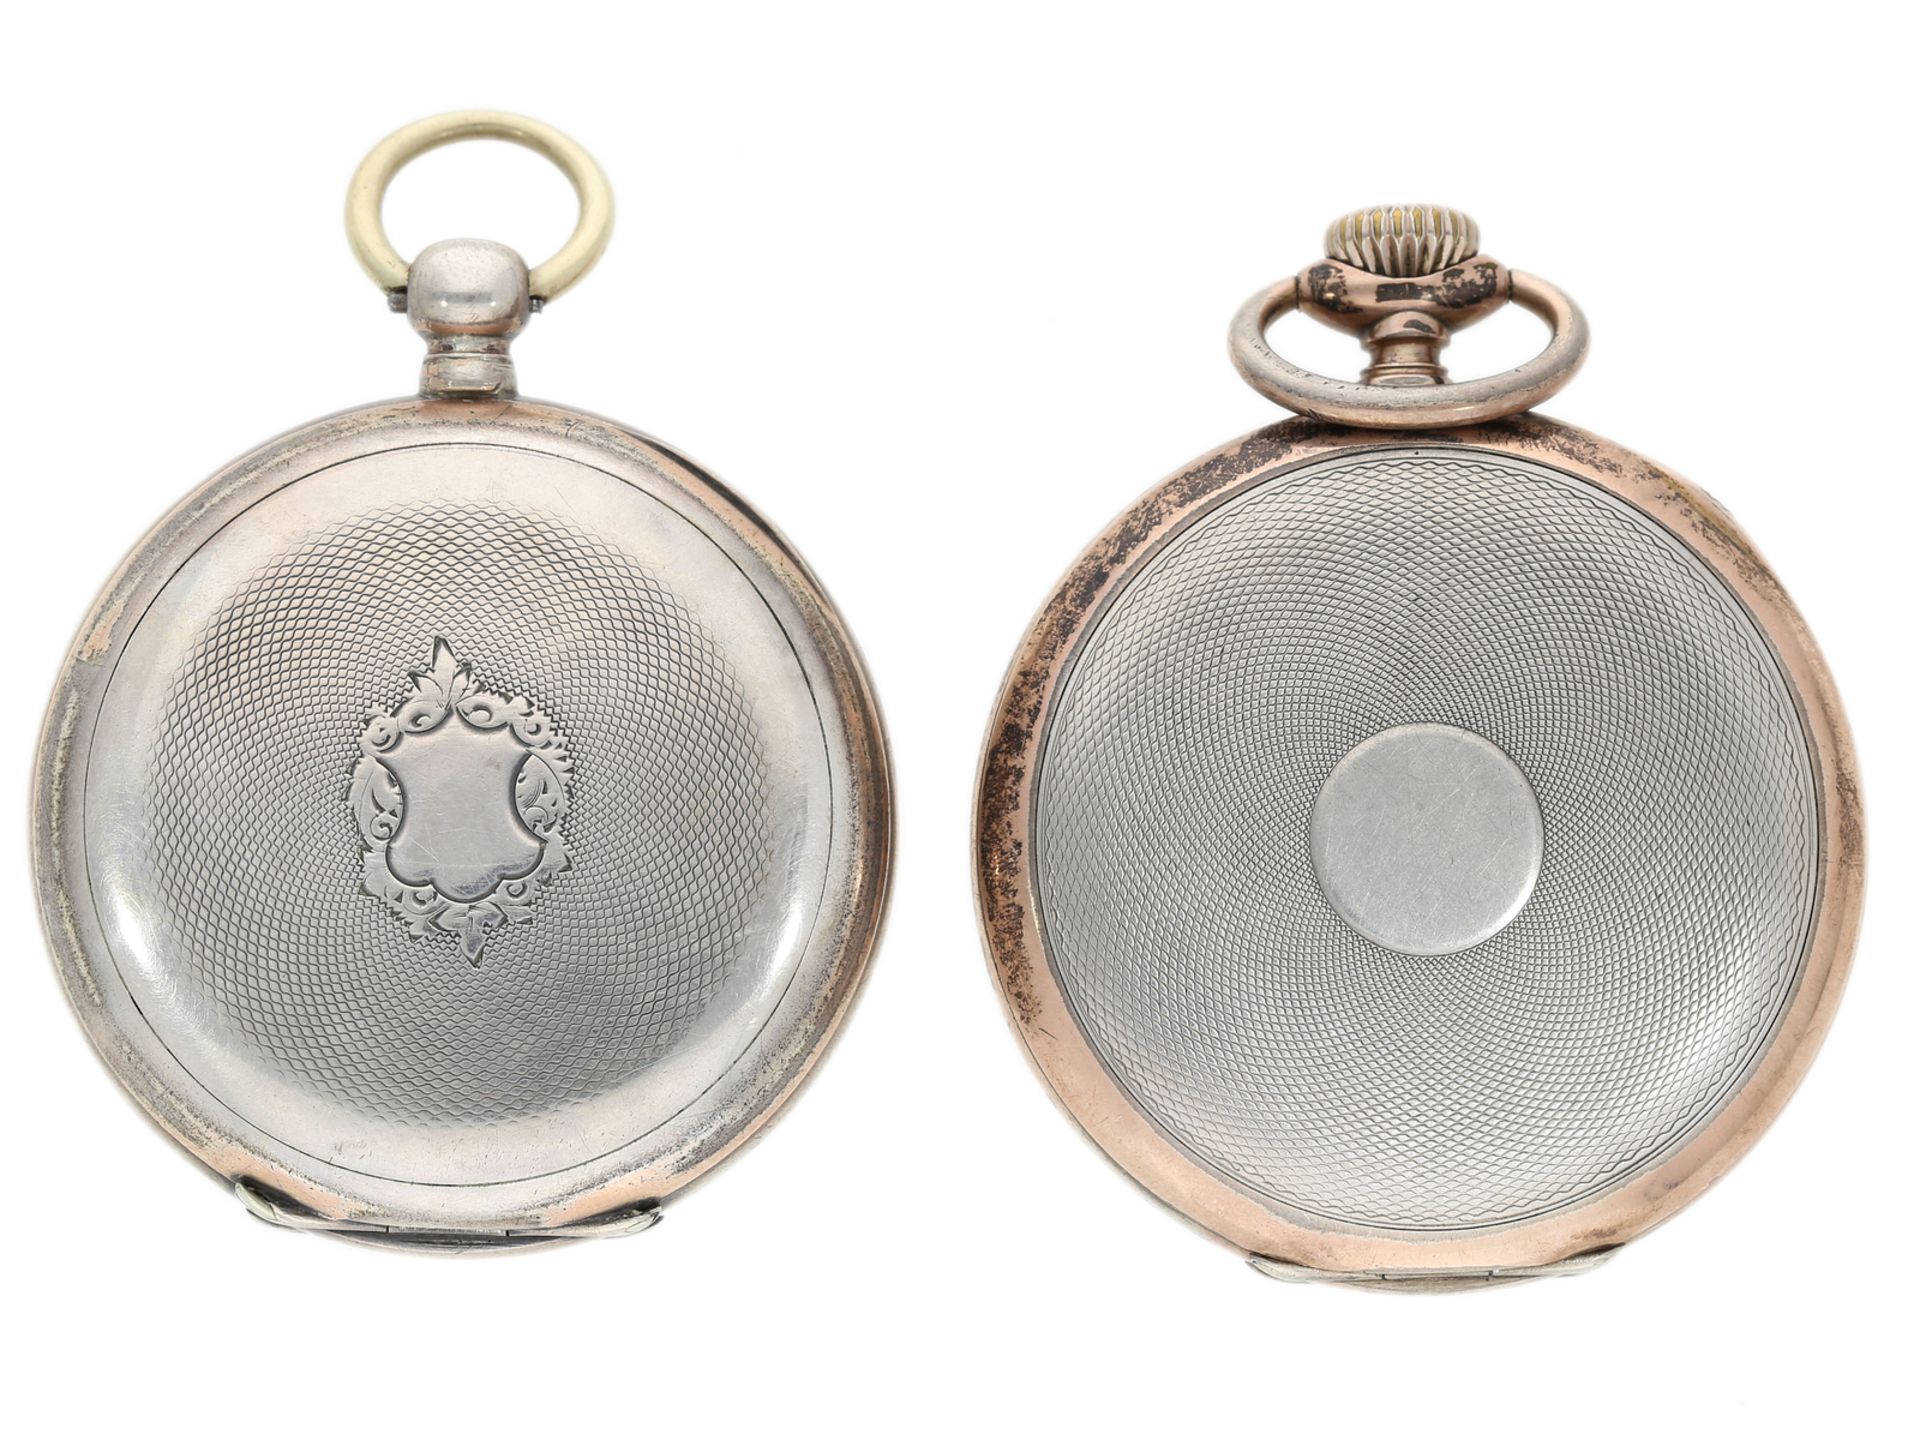 Taschenuhr: Konvolut aus 2 feinen silbernen Herrenuhren, 1870/1900 - Bild 2 aus 5